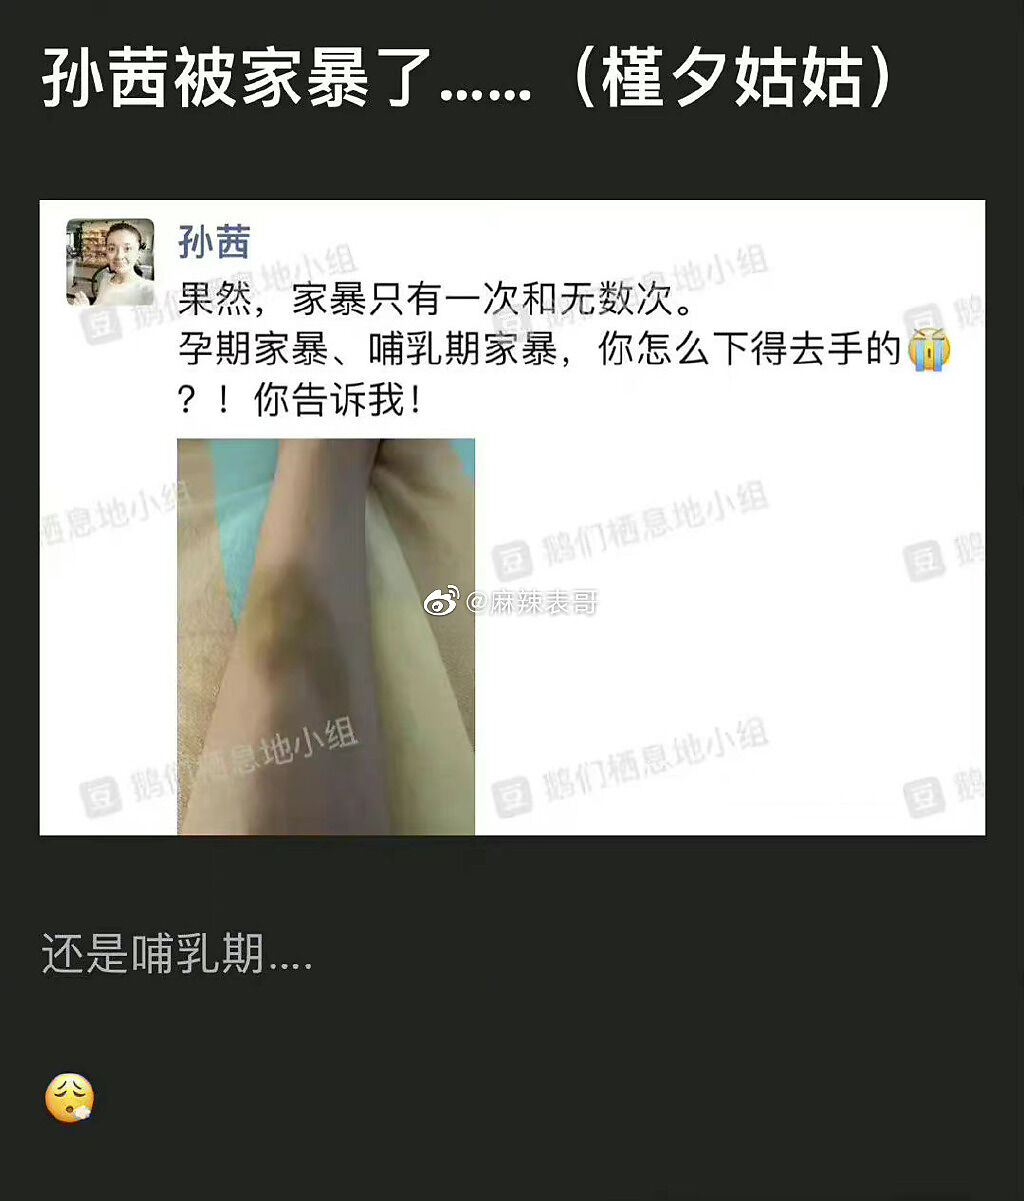 微博瘋傳疑似孫茜遭家暴受傷的照片。(微博)